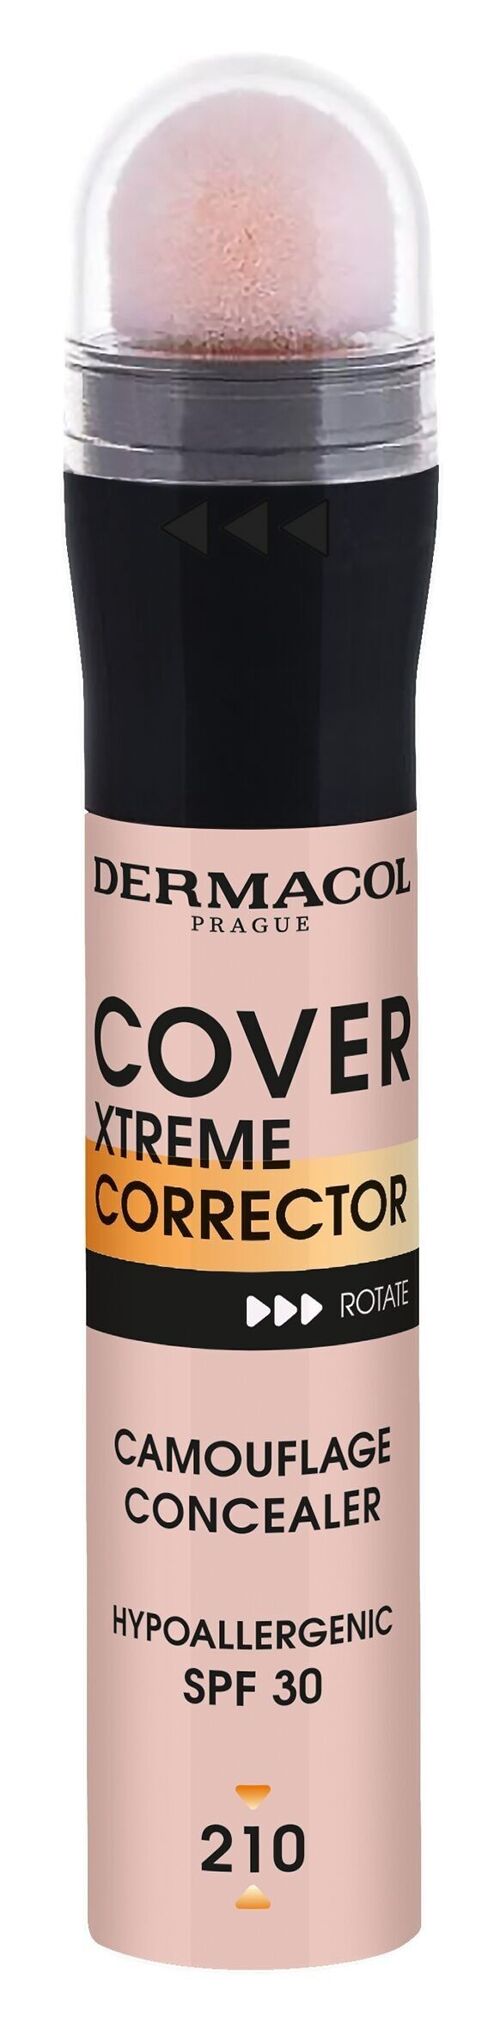 Corrector Cover Xtreme 2 - 210